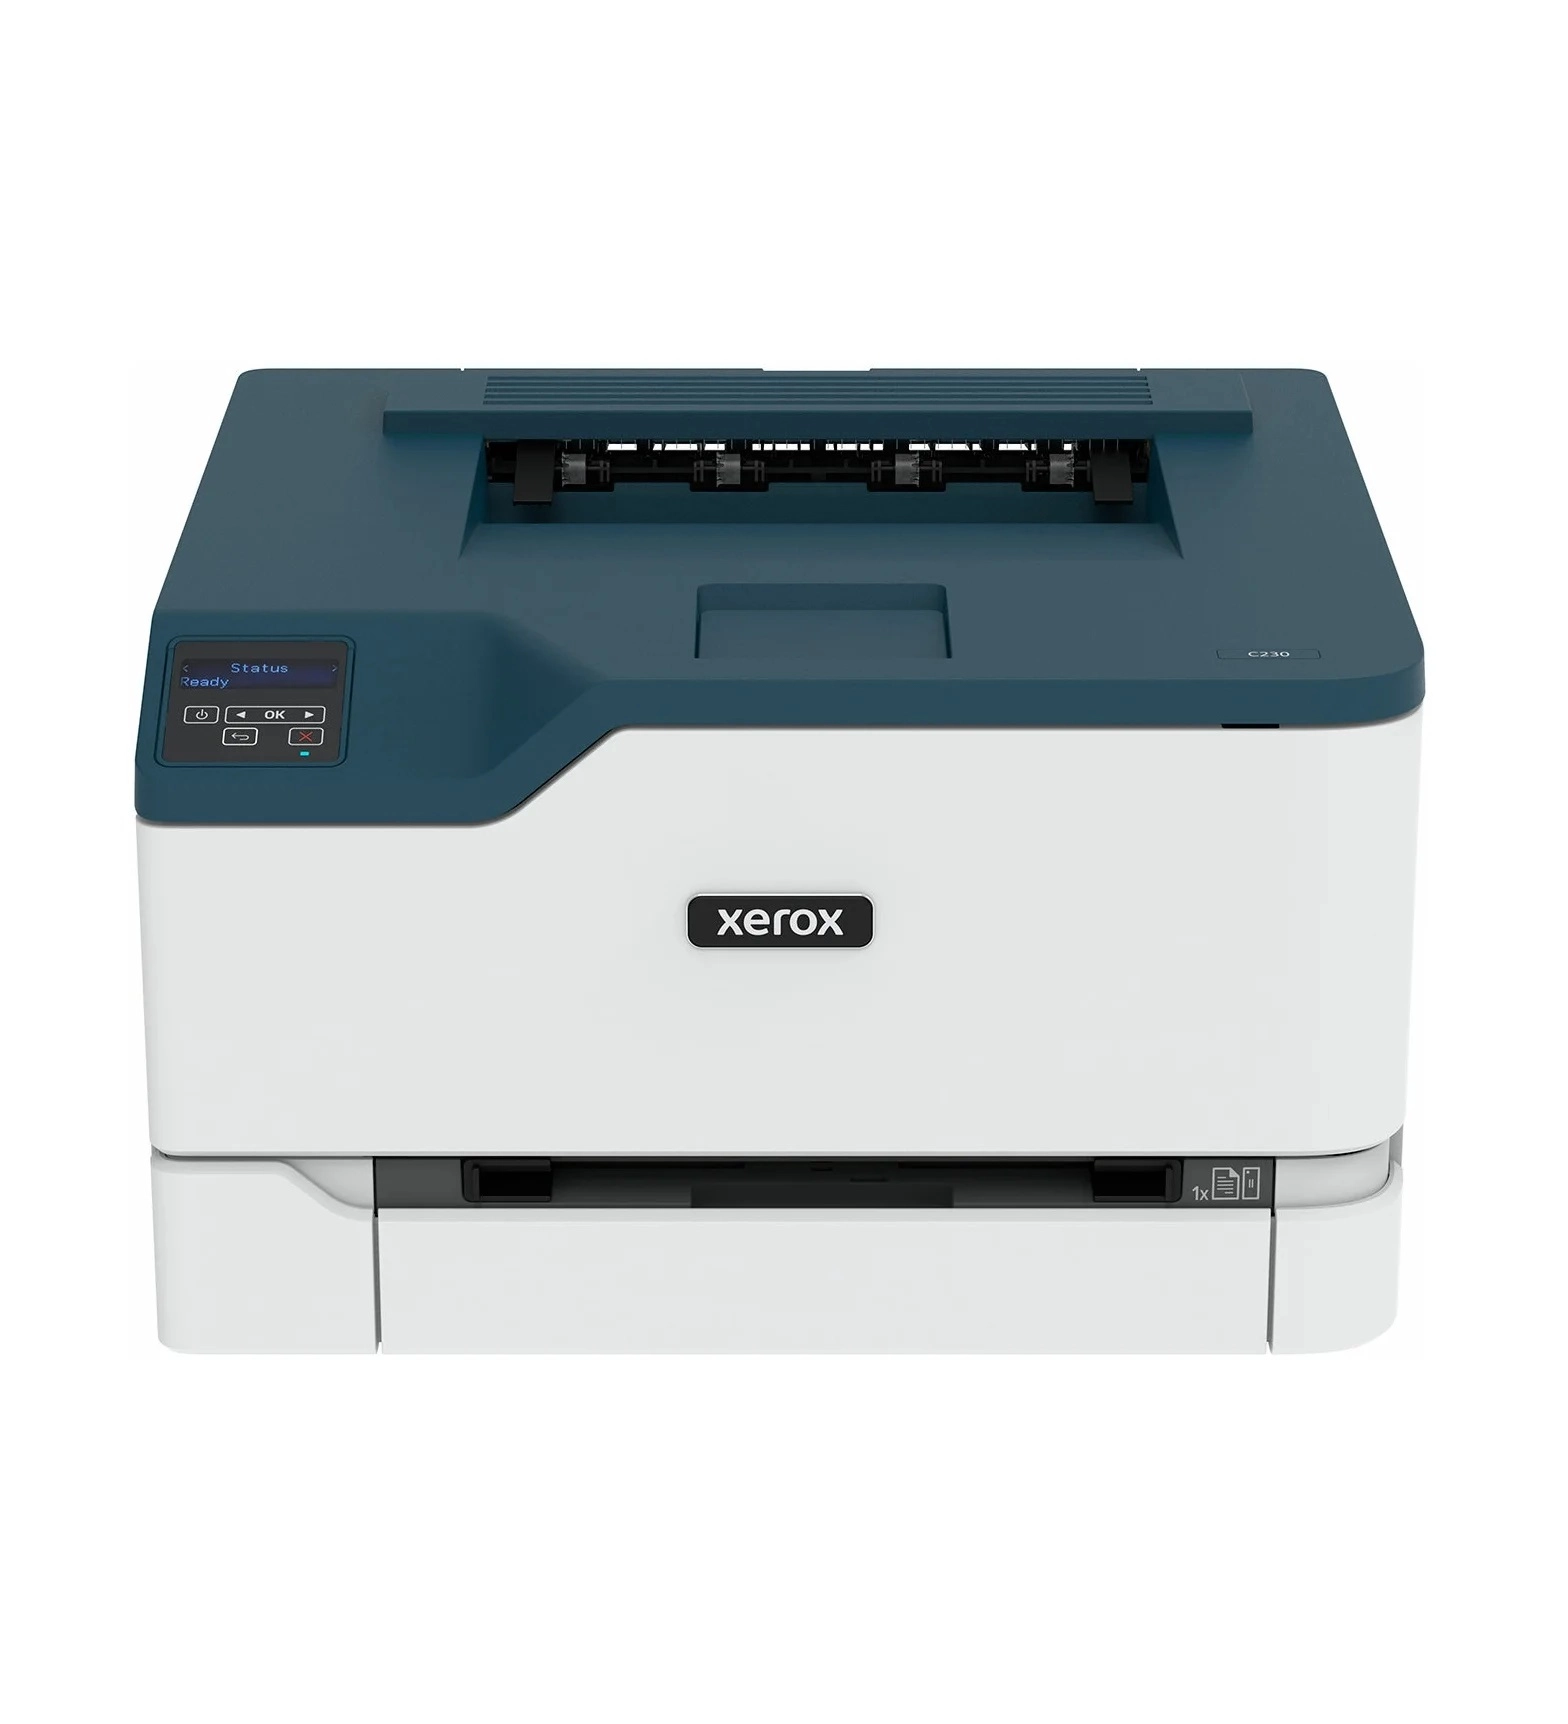 Принтер Xerox C230 (А4, лазерный, цветной) купить